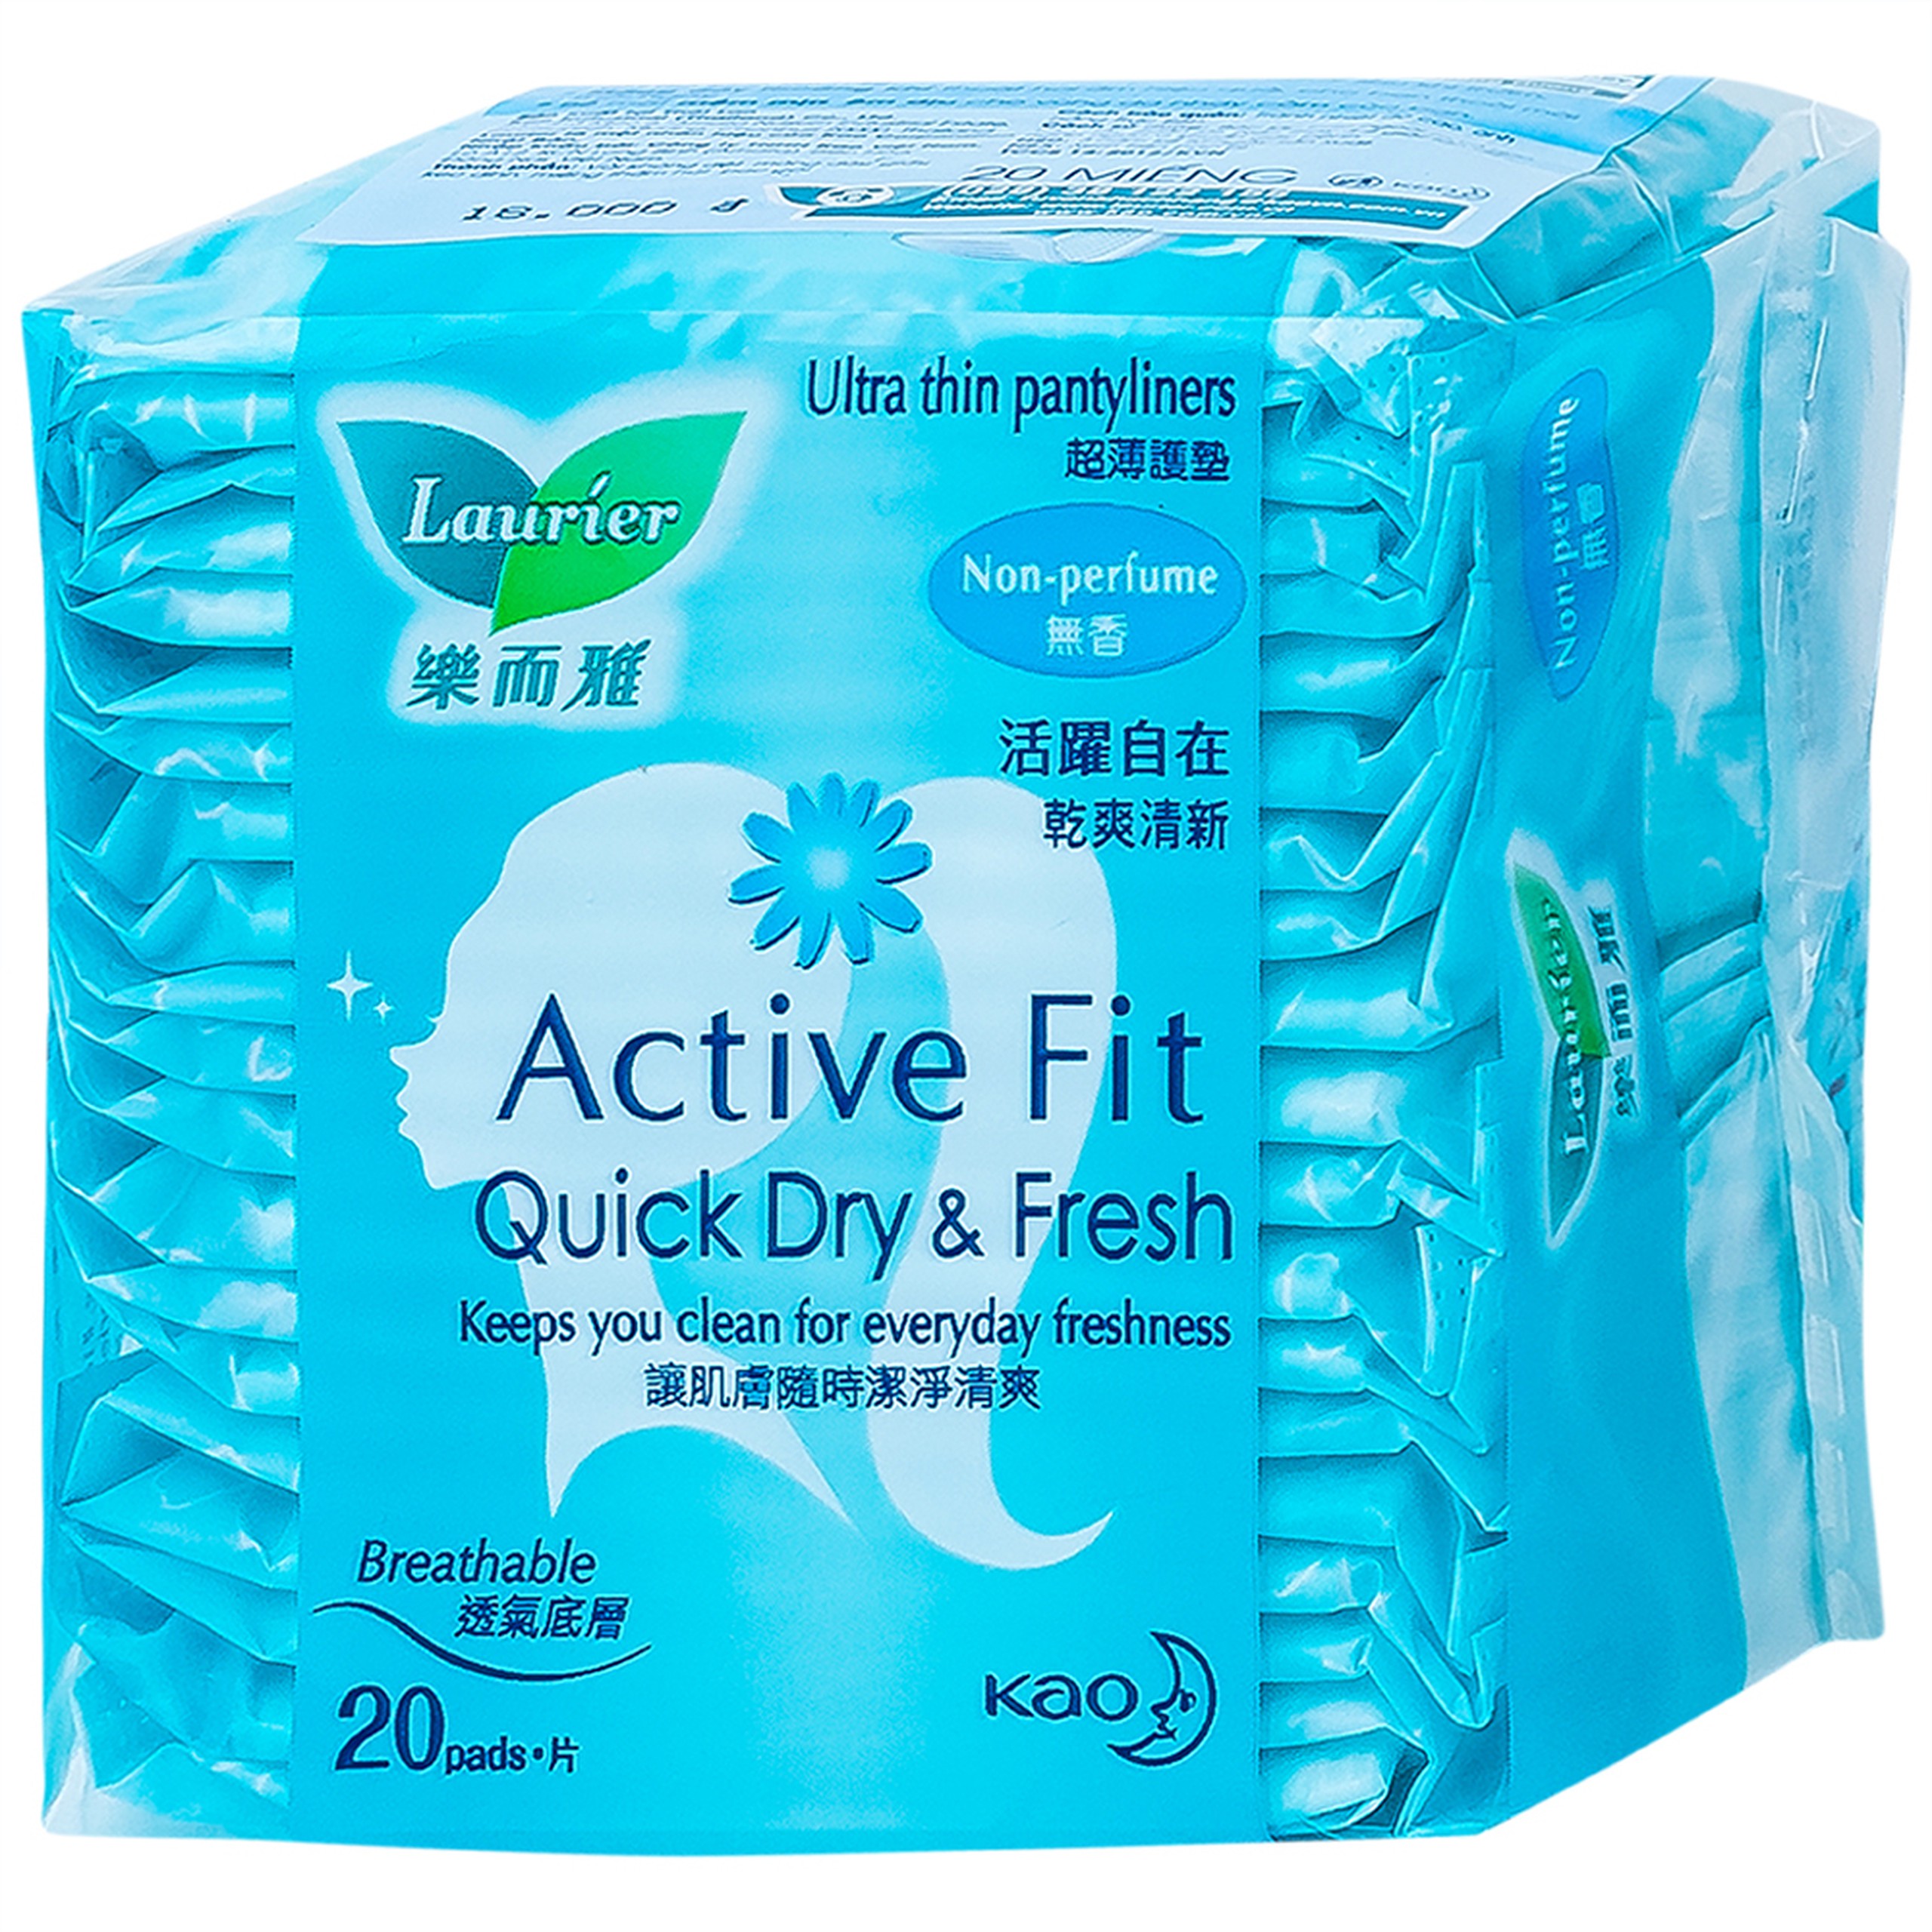 Băng vệ sinh Laurier Active Fit Quick Dry And Fresh hàng ngày hút ẩm hiệu quả, không gây hầm hơi (20 miếng)